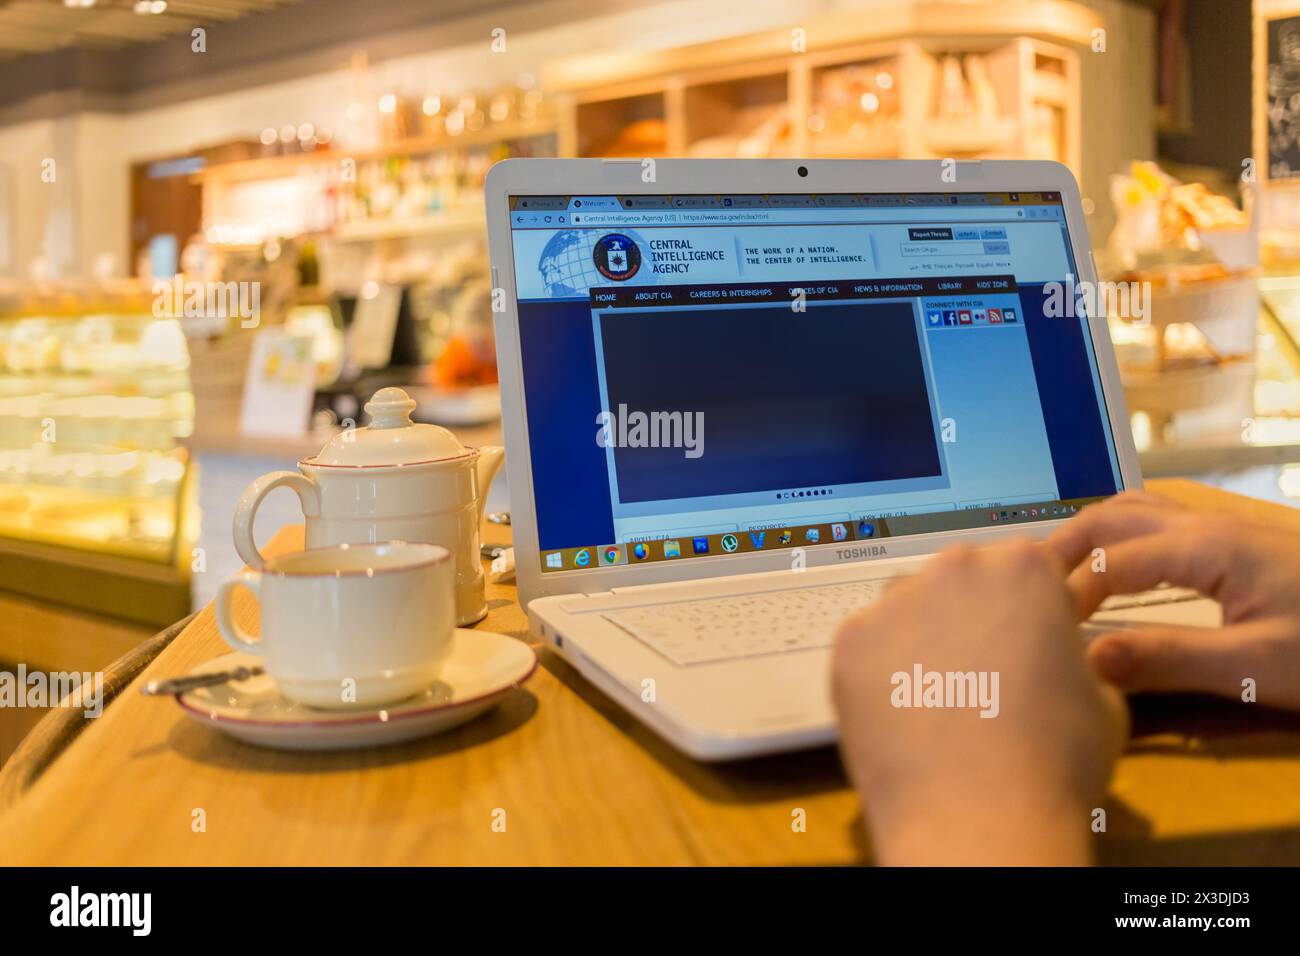 MOSCOU, RUSSIE - SEP 16, 2016 : le mans mains clavier sur ordinateur portable dans le café, site Web de la Central Intelligence Agency, gros plan Banque D'Images